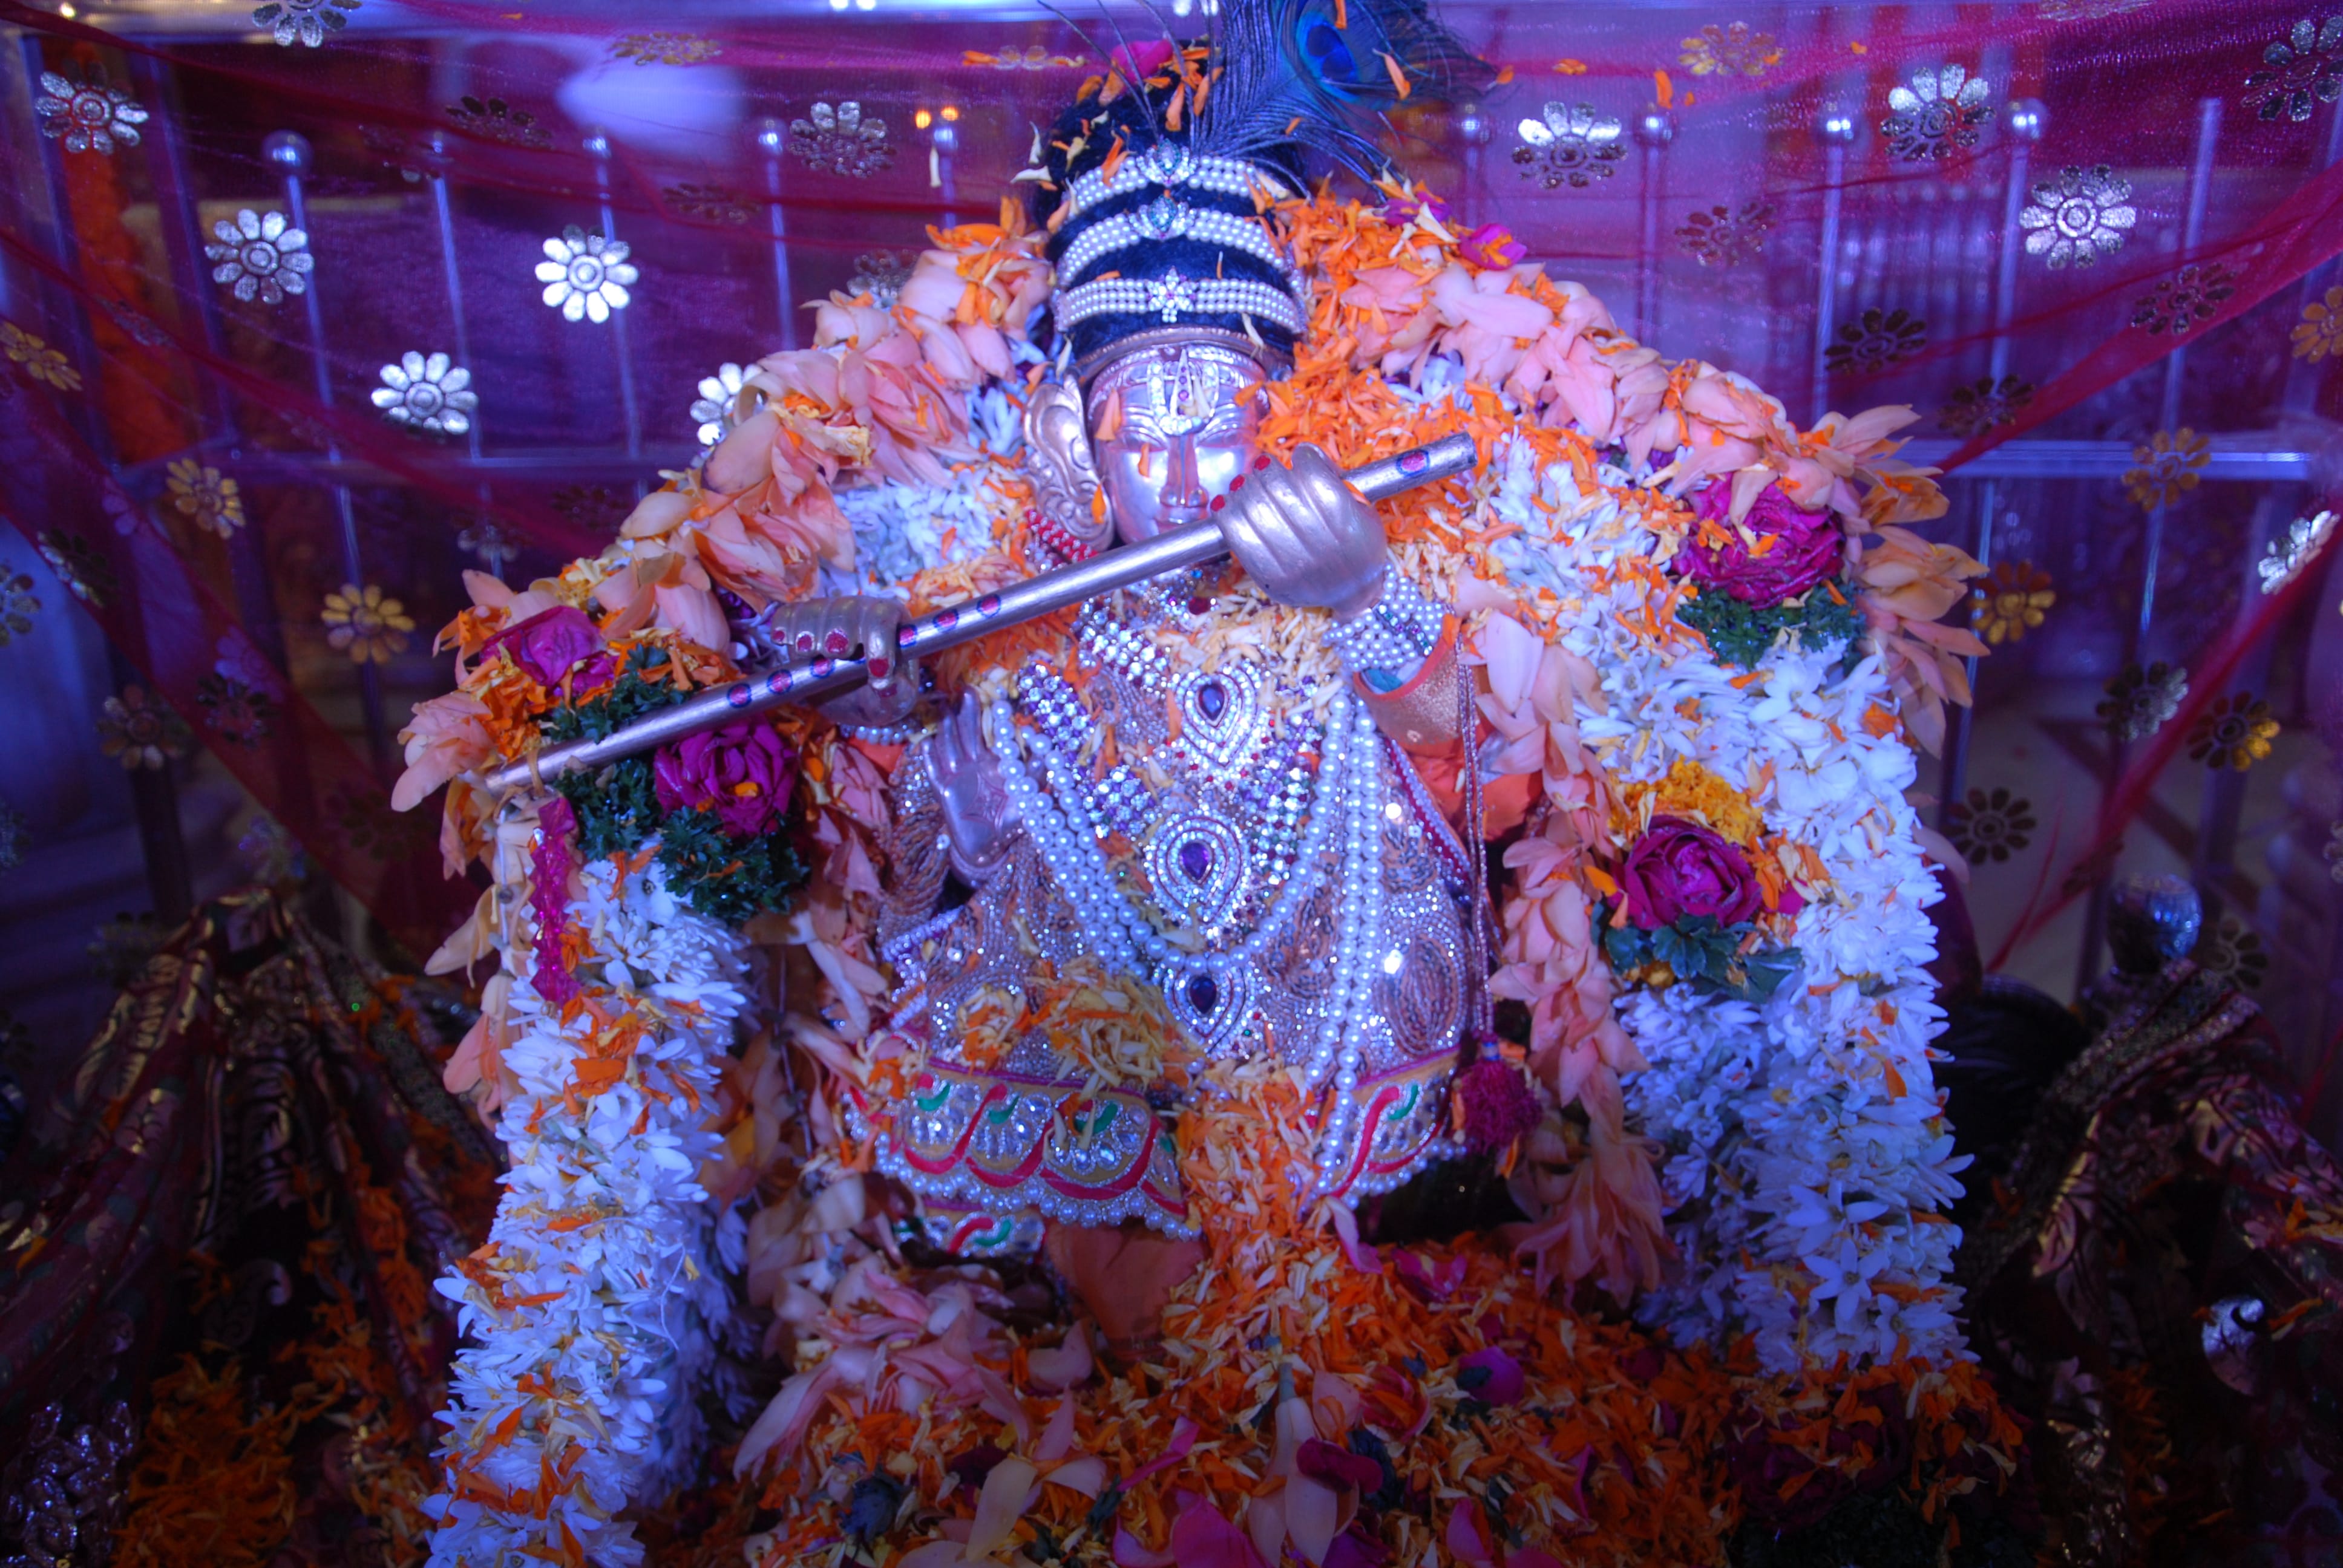 Shri Mahalaxmi Mandir Sarasbaug Pune